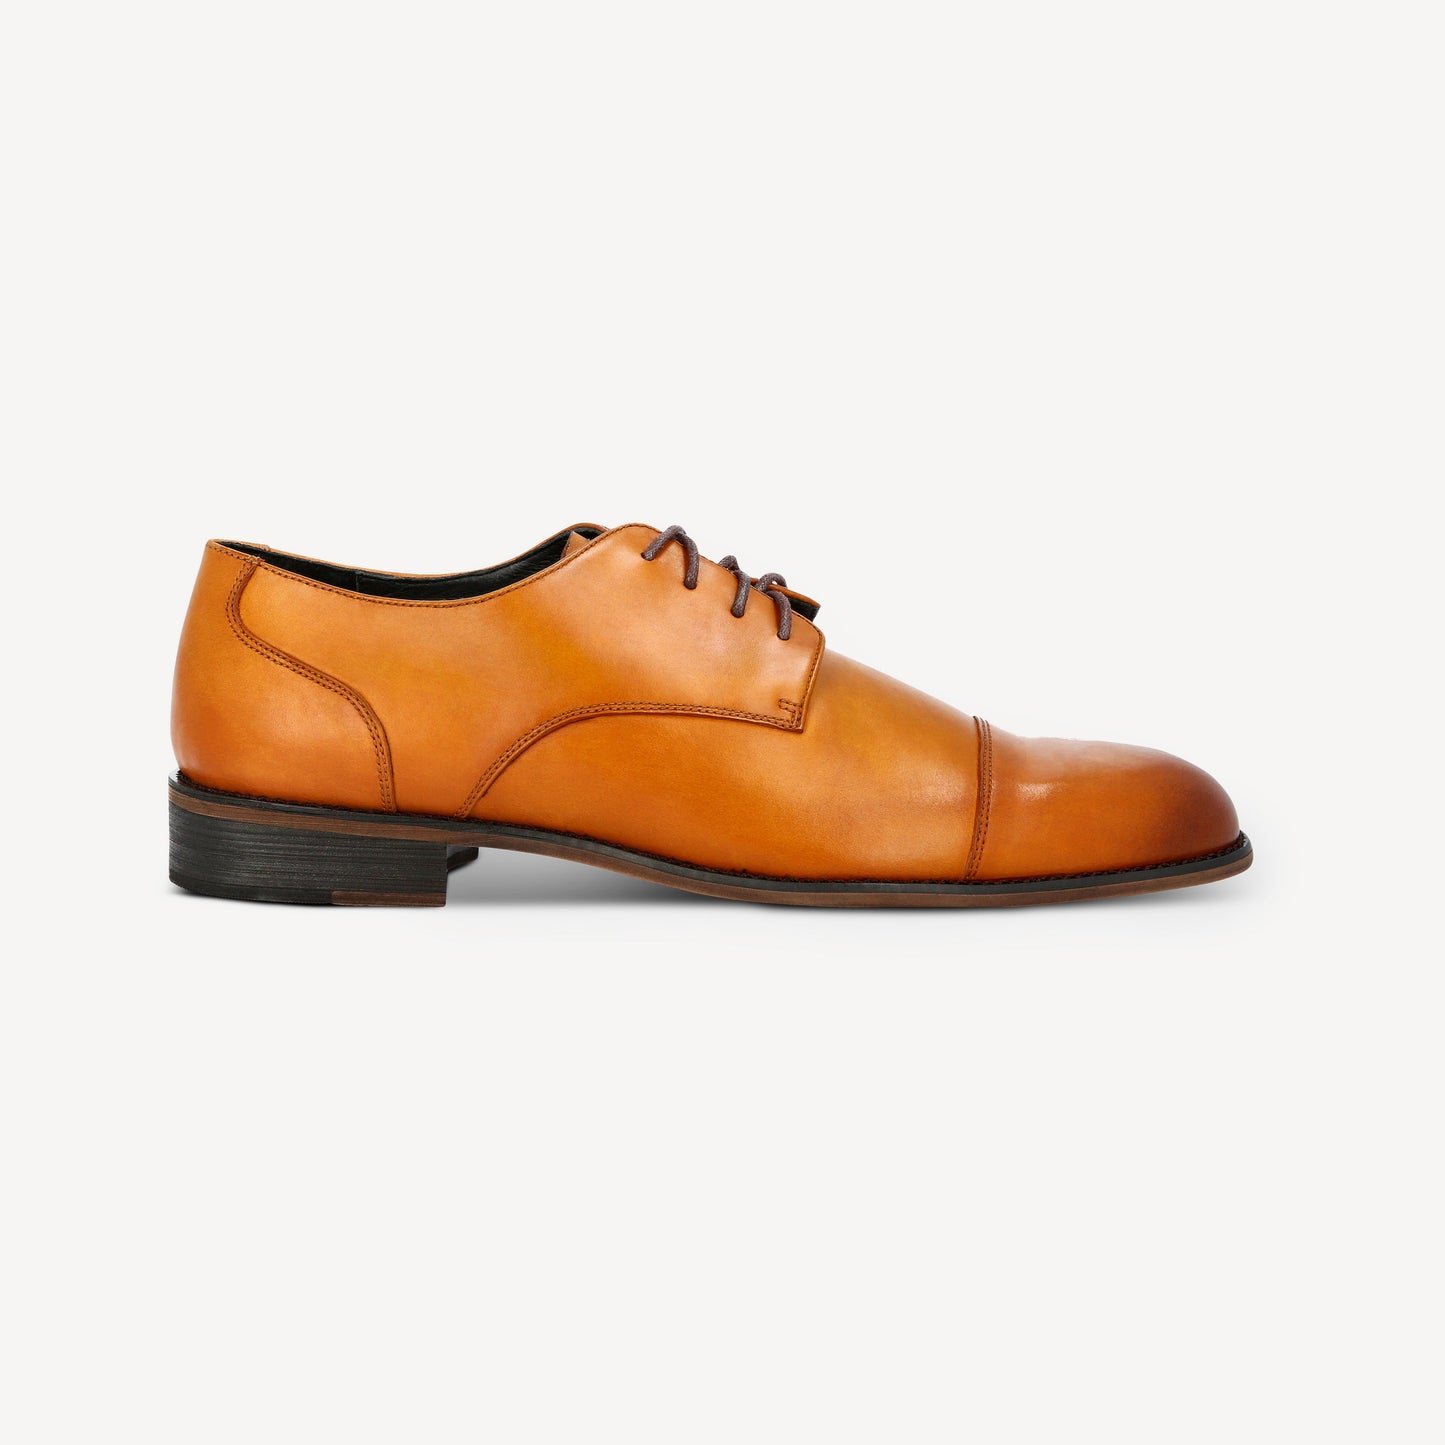 Light Tan Oxford Shoes - SANA by SuitShop